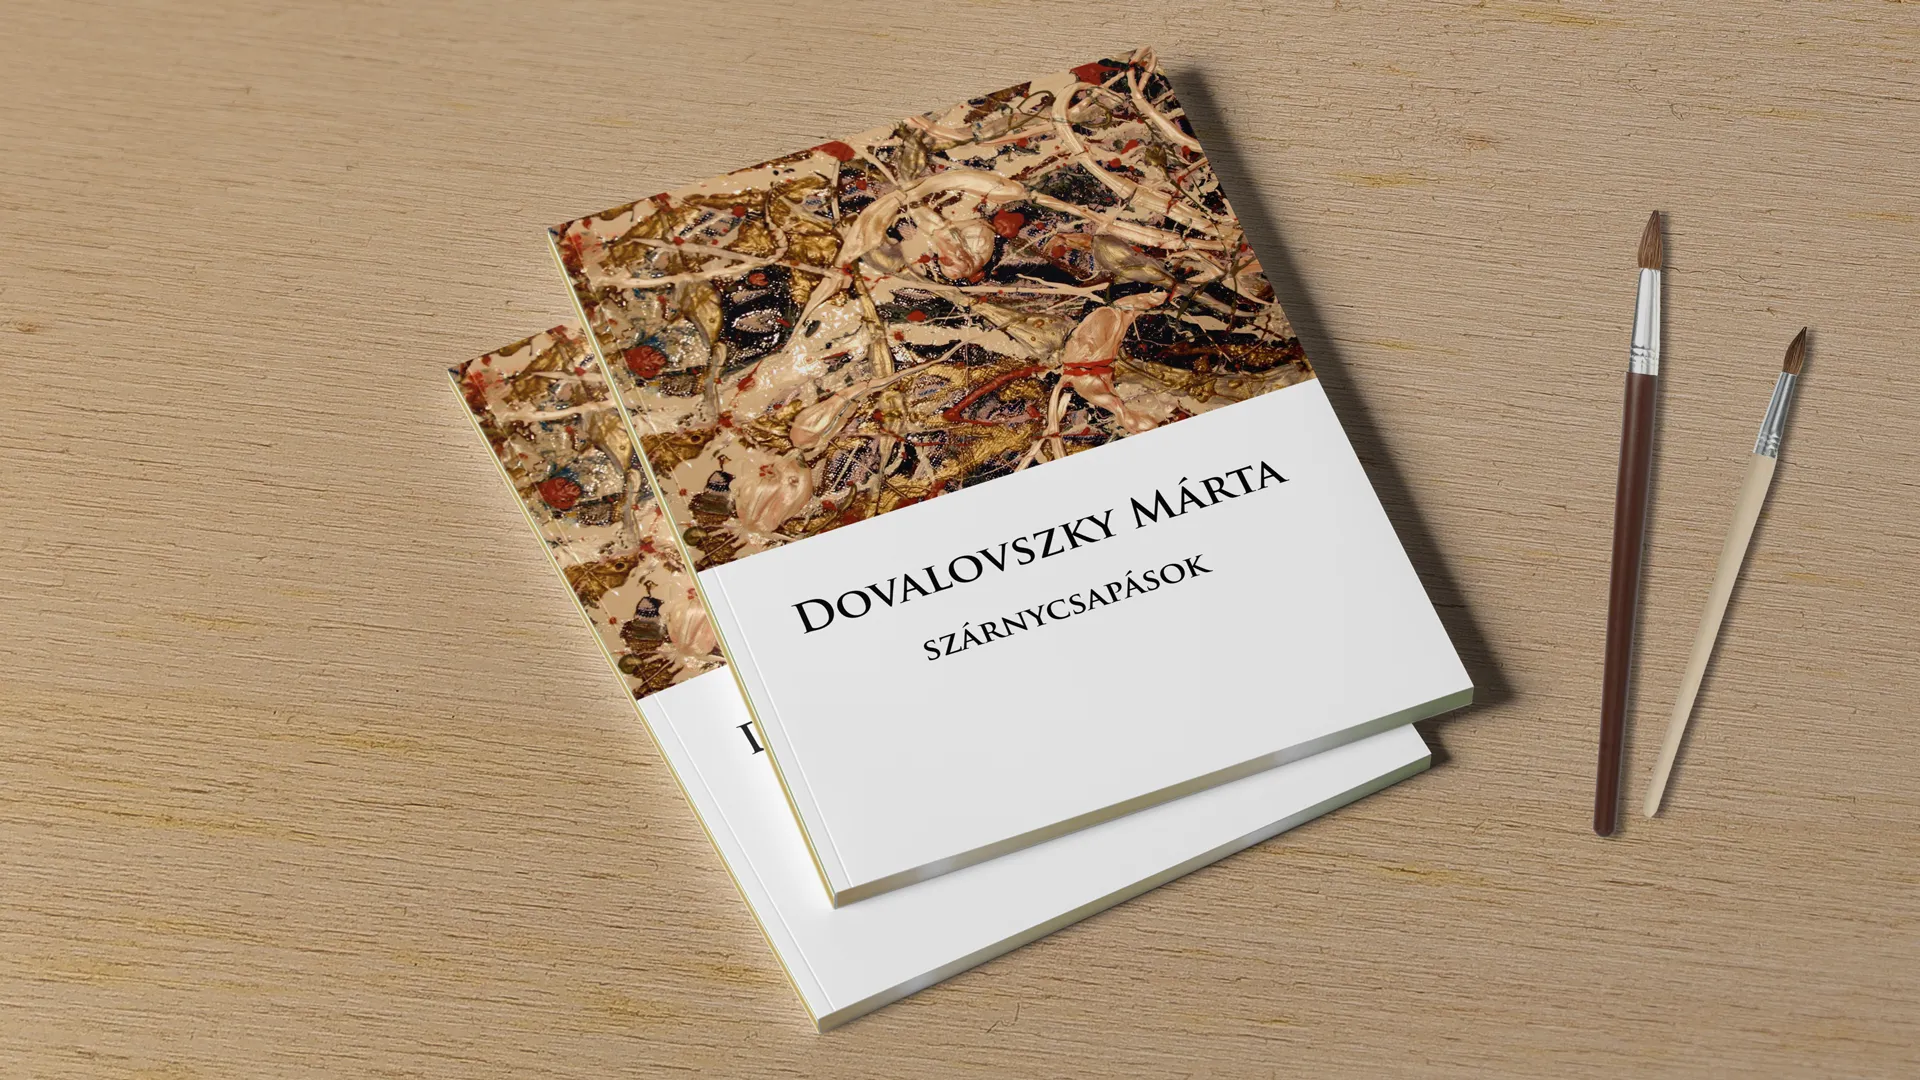 Dovalovszky Marta brochure front page